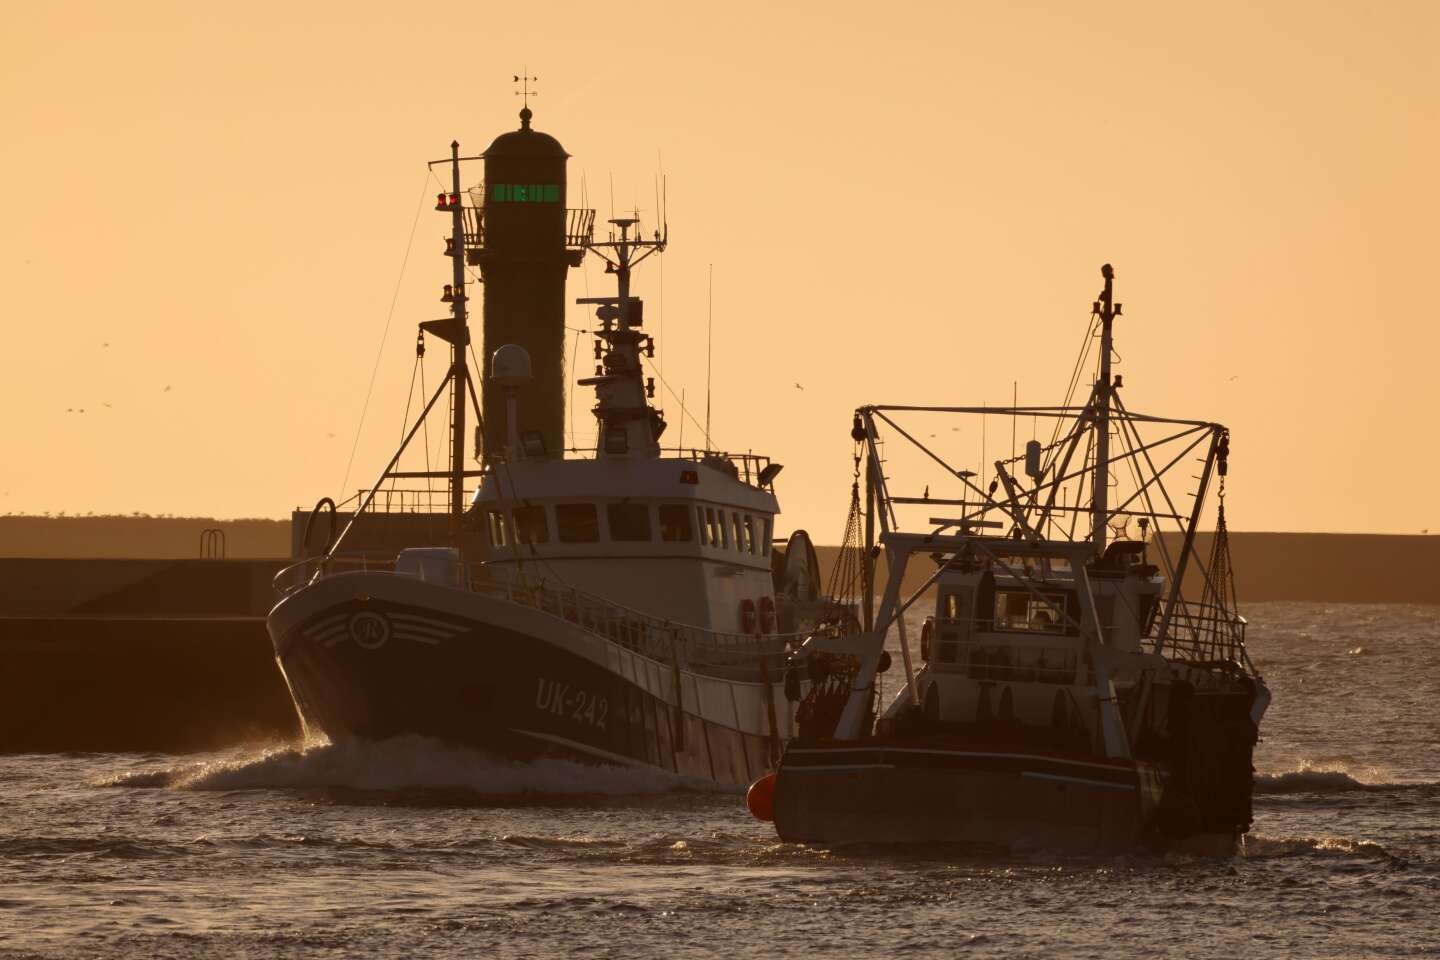 Carburant : la prolongation des aides, un premier pas pour les pêcheurs français